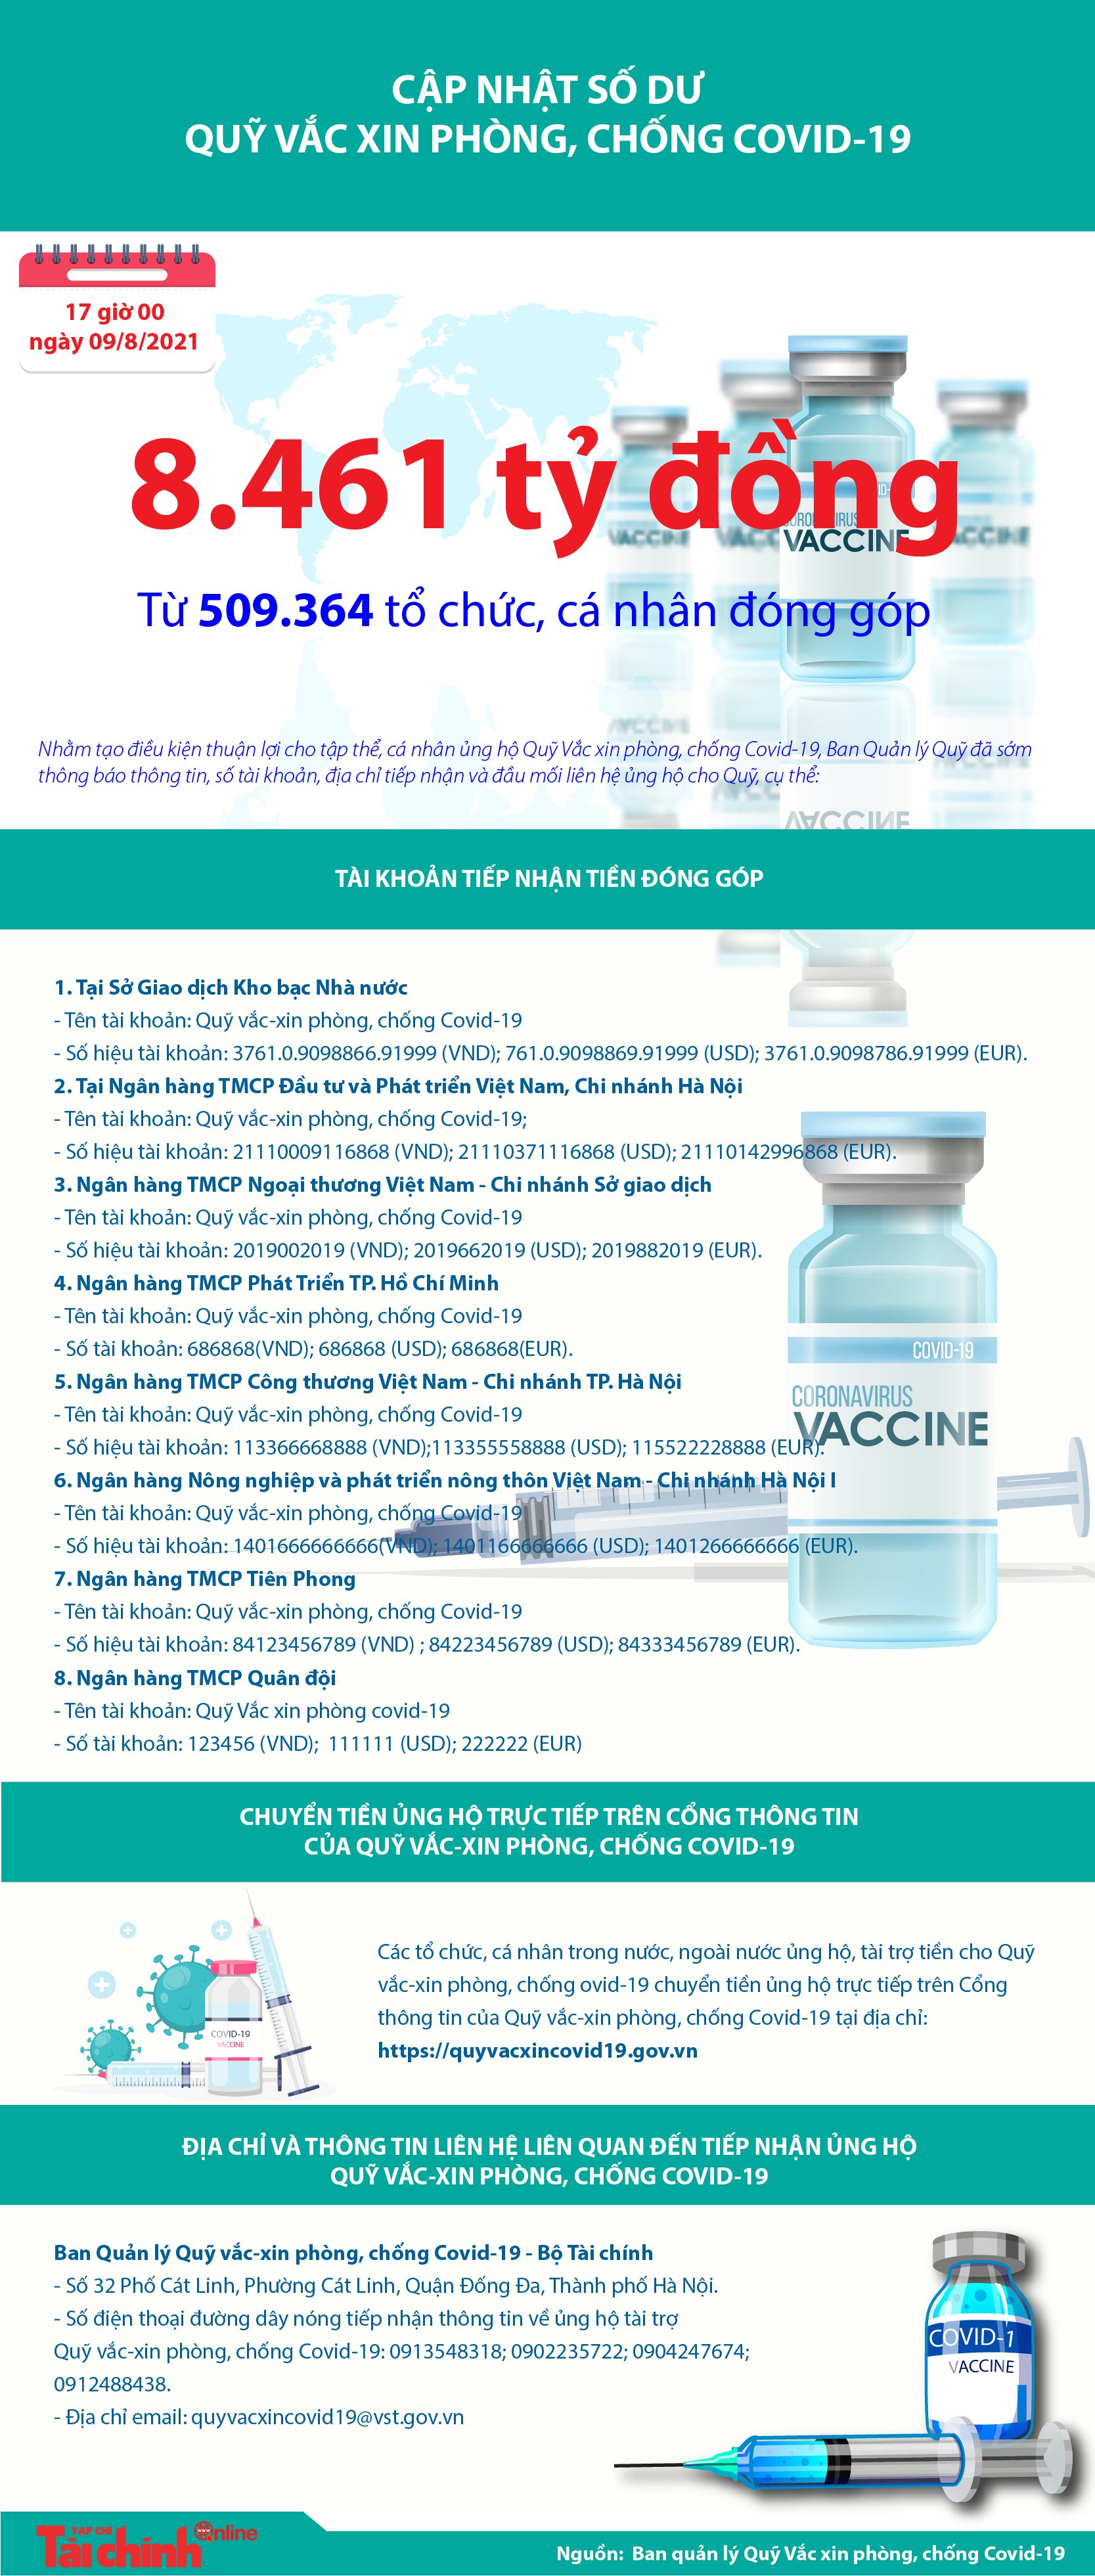  [Infographics] Quỹ Vắc xin phòng, chống COVID-19 đã tiếp nhận ủng hộ 8.461 tỷ đồng - Ảnh 1